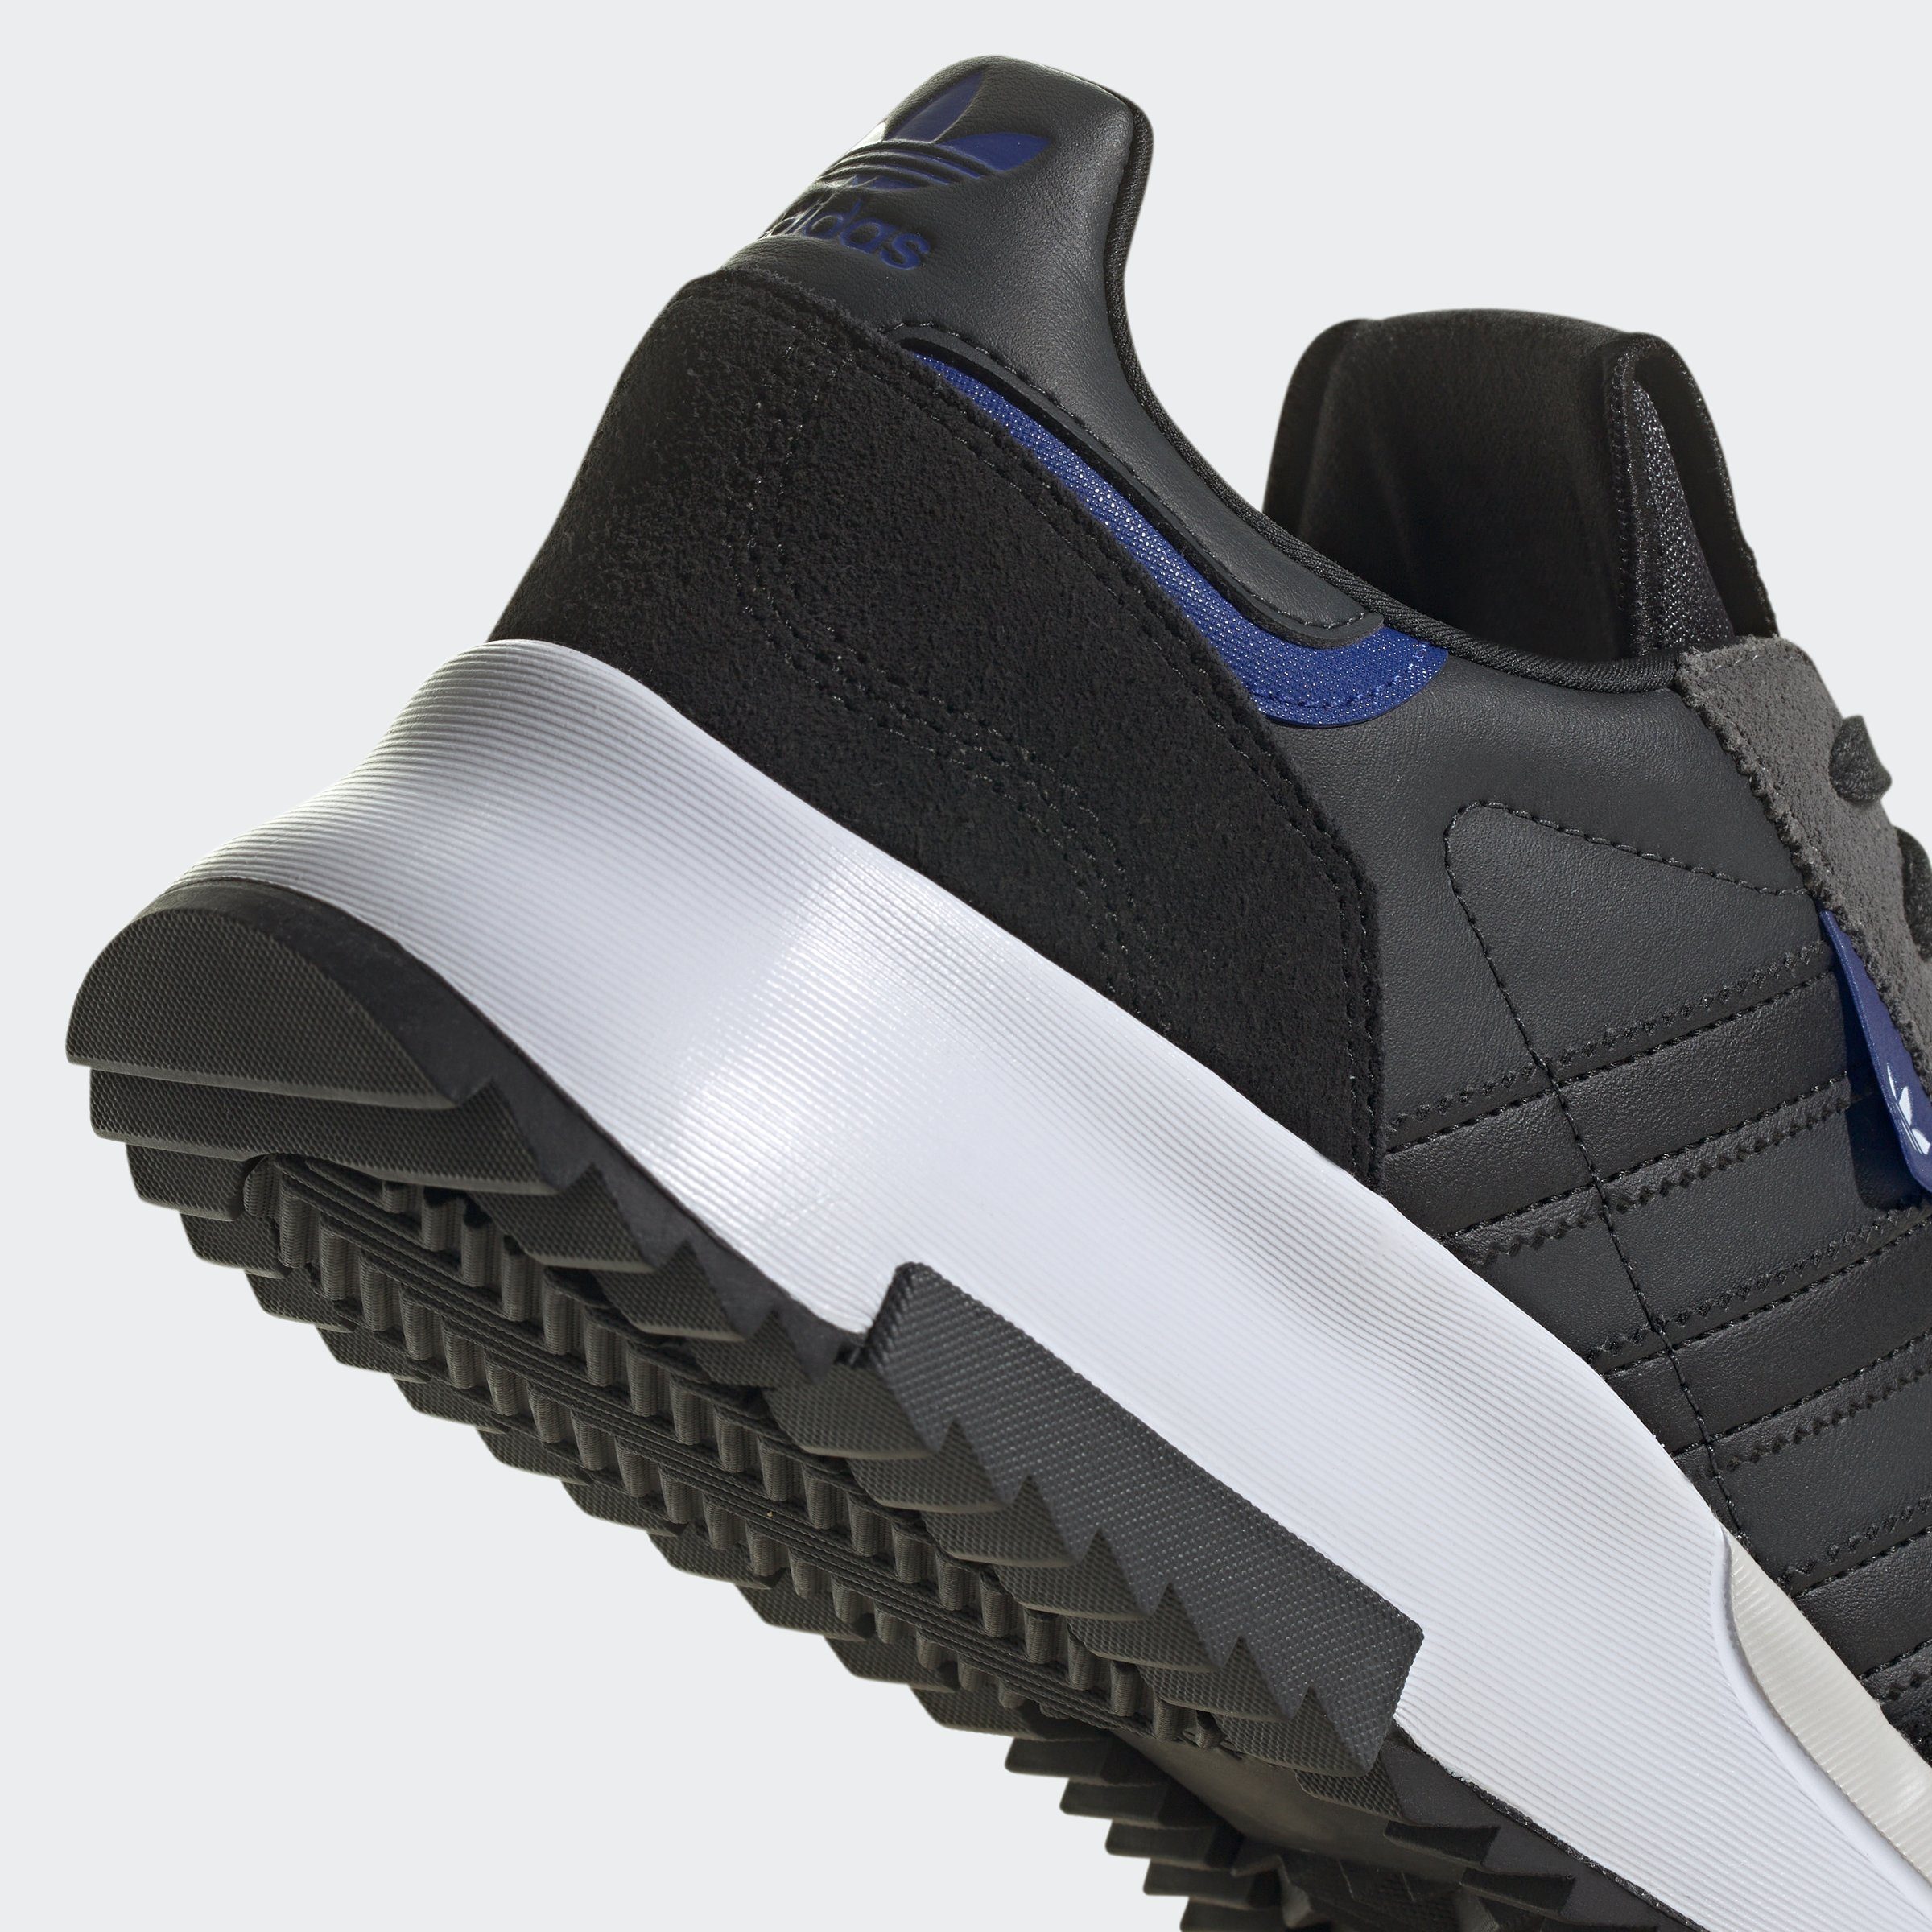 F2 Blue Core Black adidas RETROPY / Lucid Sneaker Carbon / Semi Originals